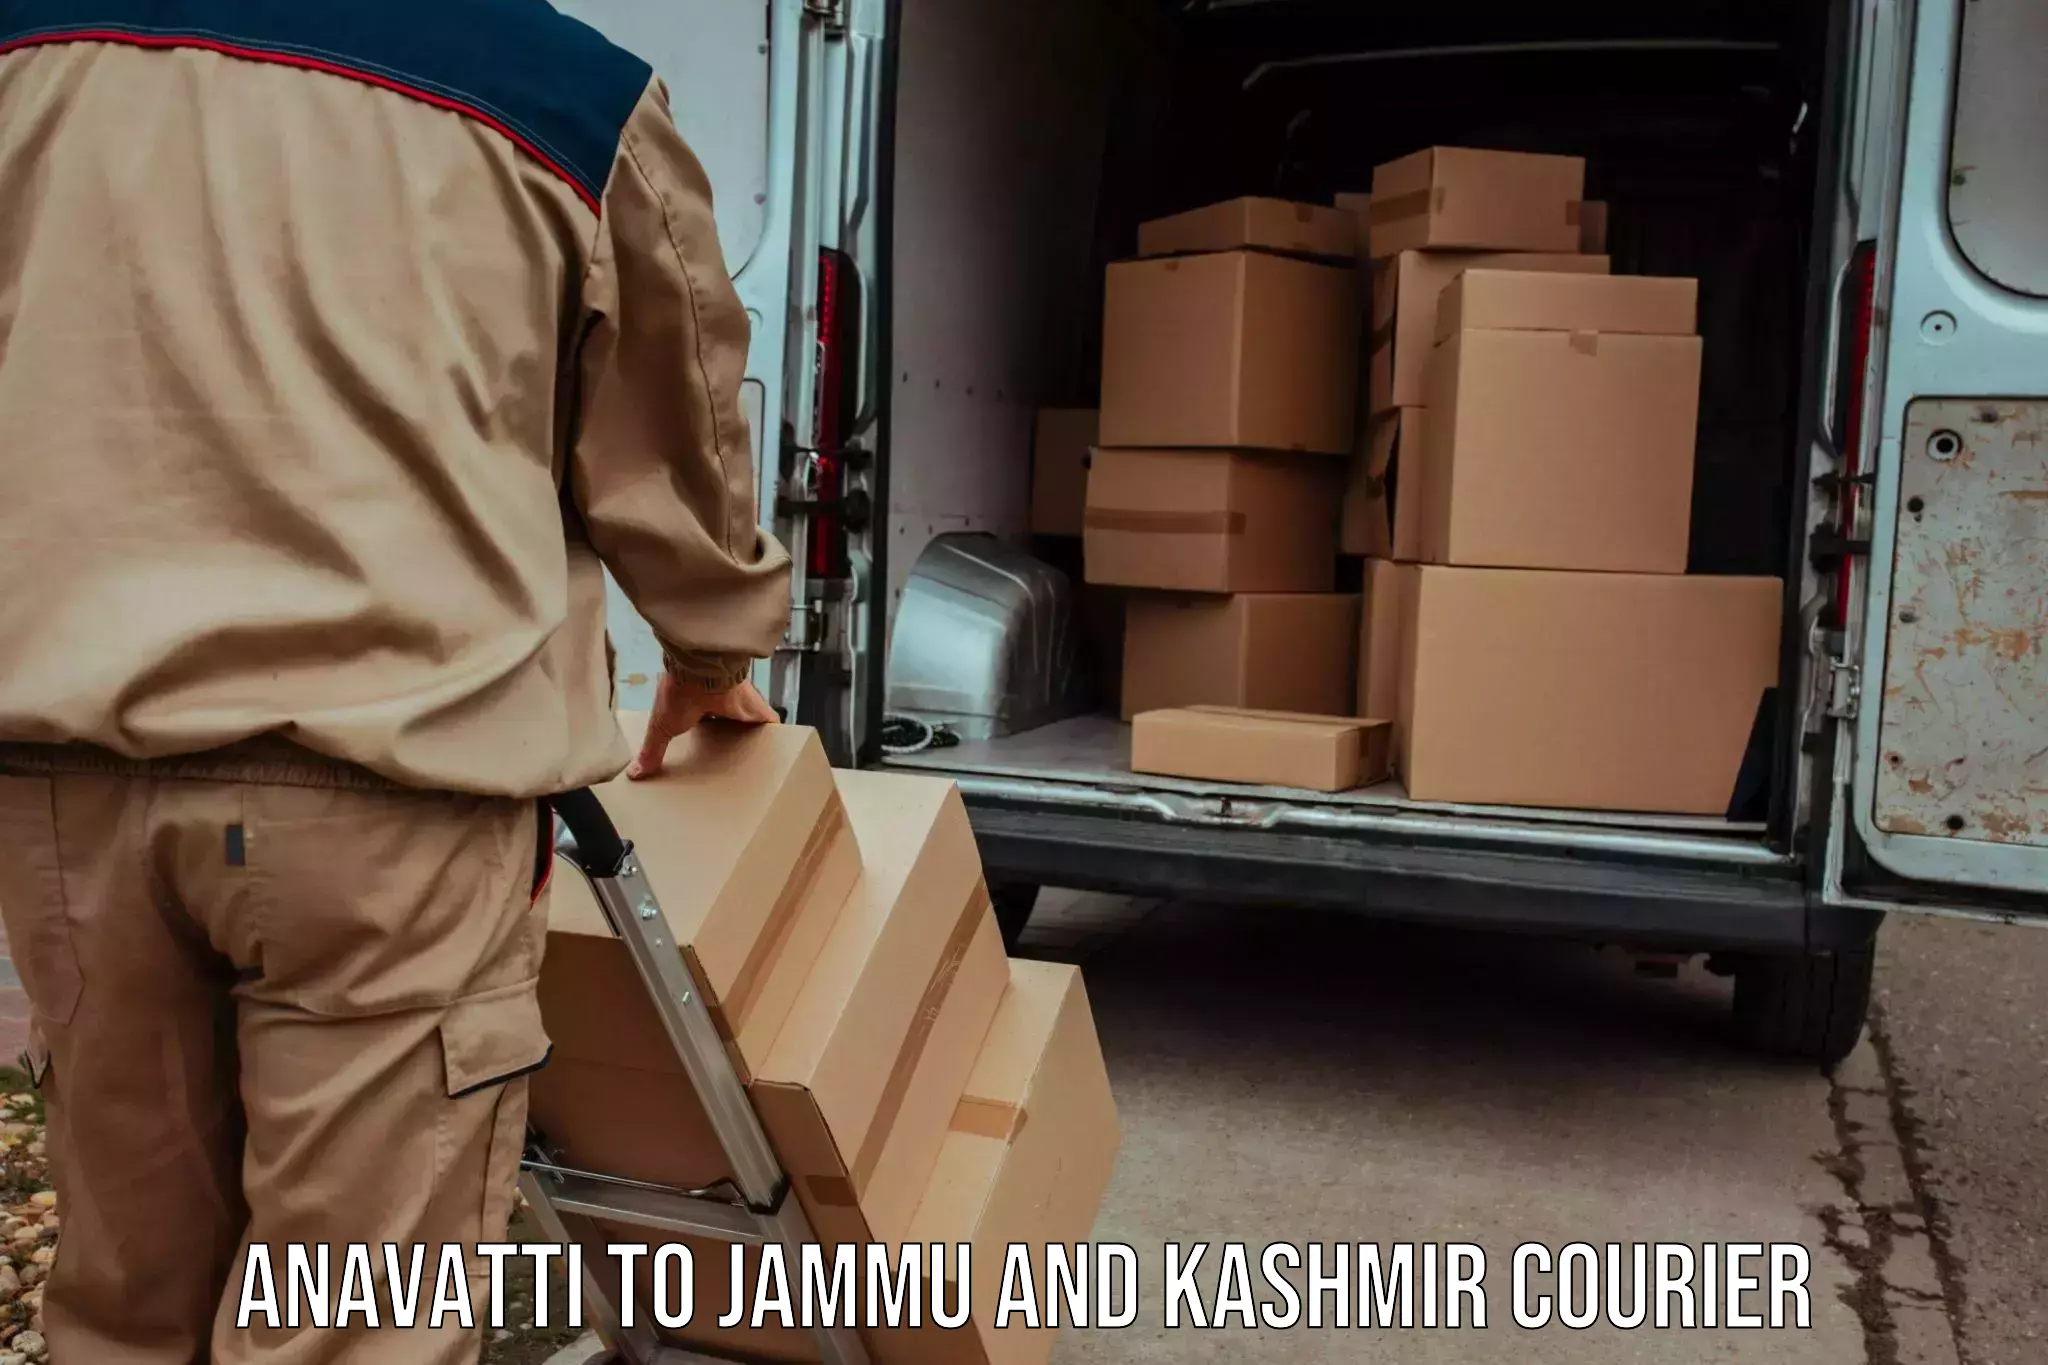 Efficient order fulfillment Anavatti to Jammu and Kashmir